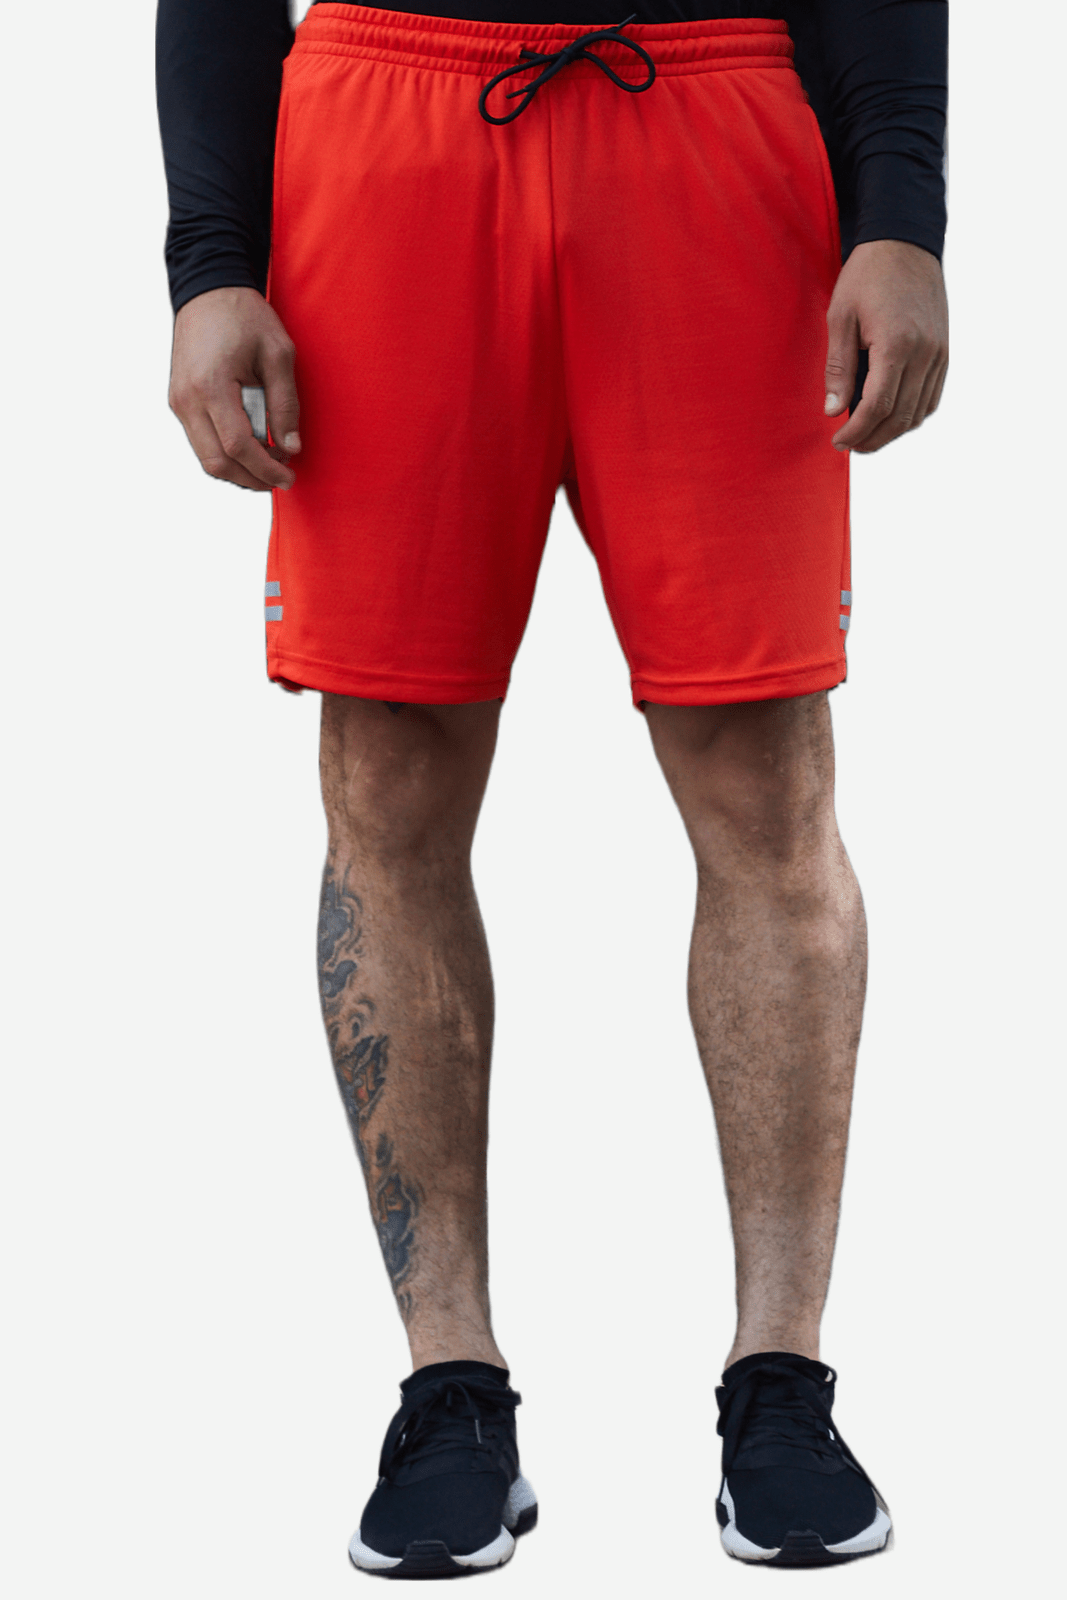 Pantaloneta deportiva naranja fondo entero, bolsillos laterales y bolsillo en posterior con cierre para hombre